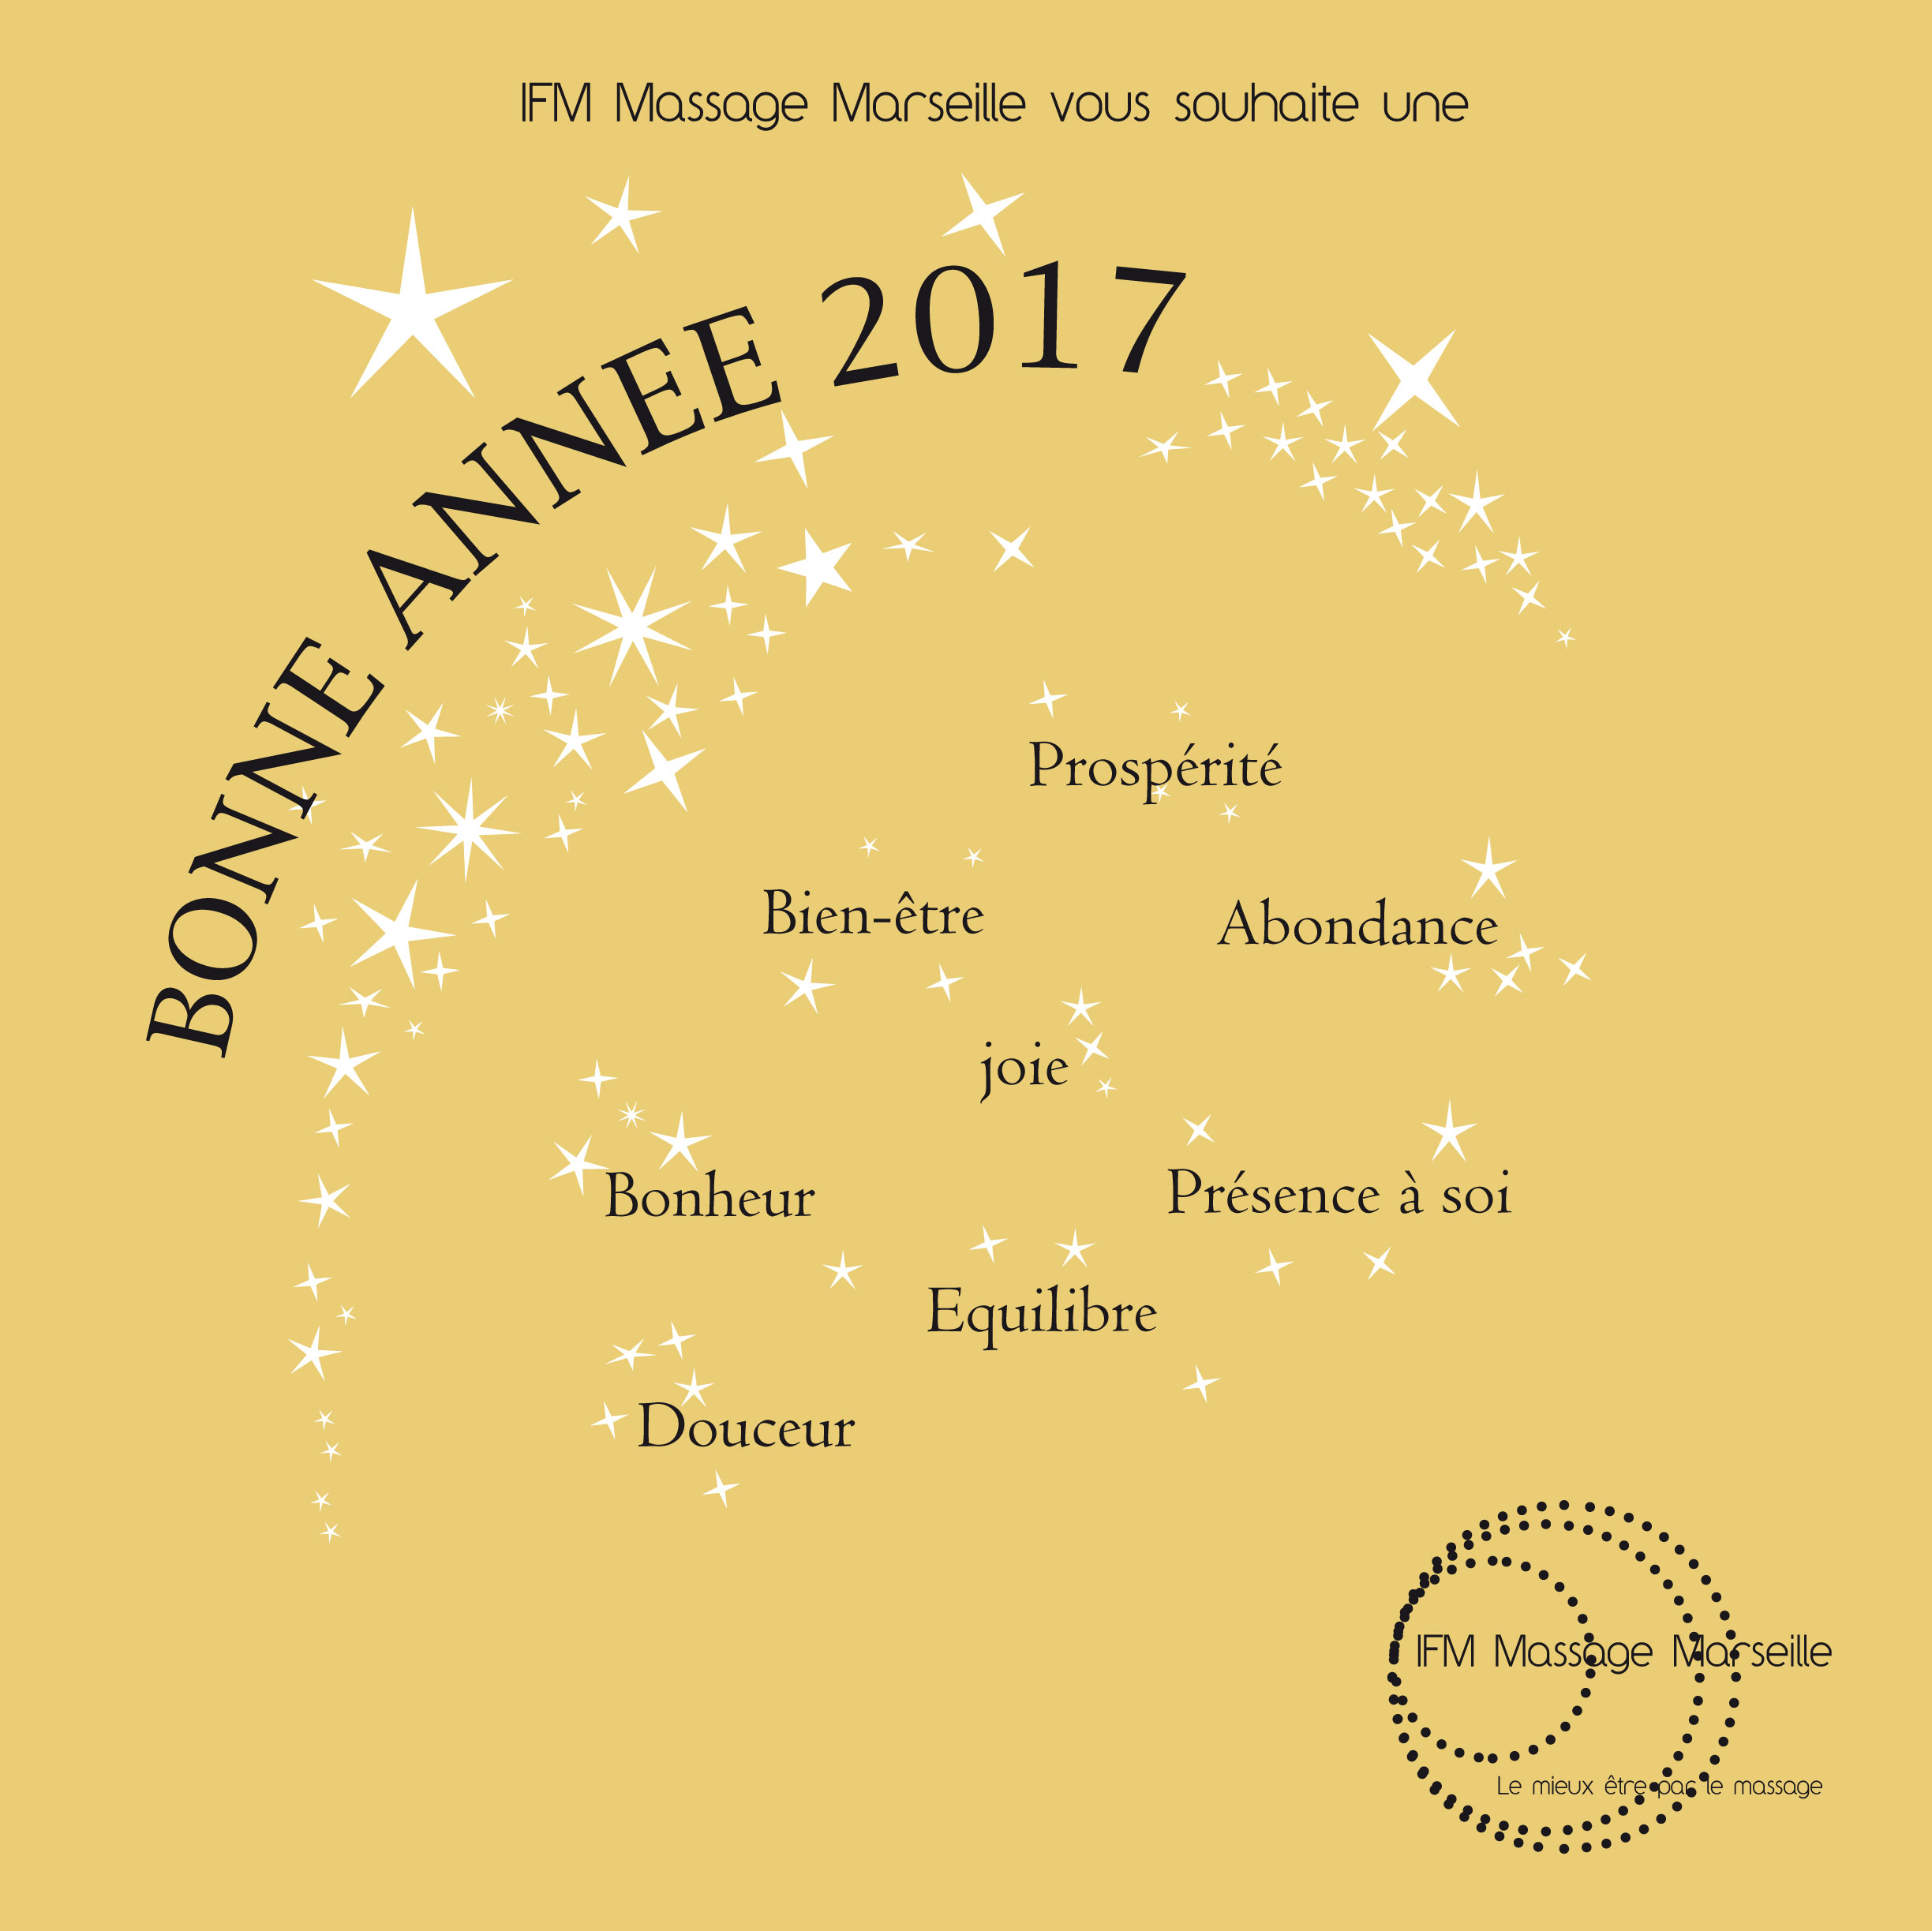 Meilleurs voeux 2017 de la part d'IFM Massage Marseille